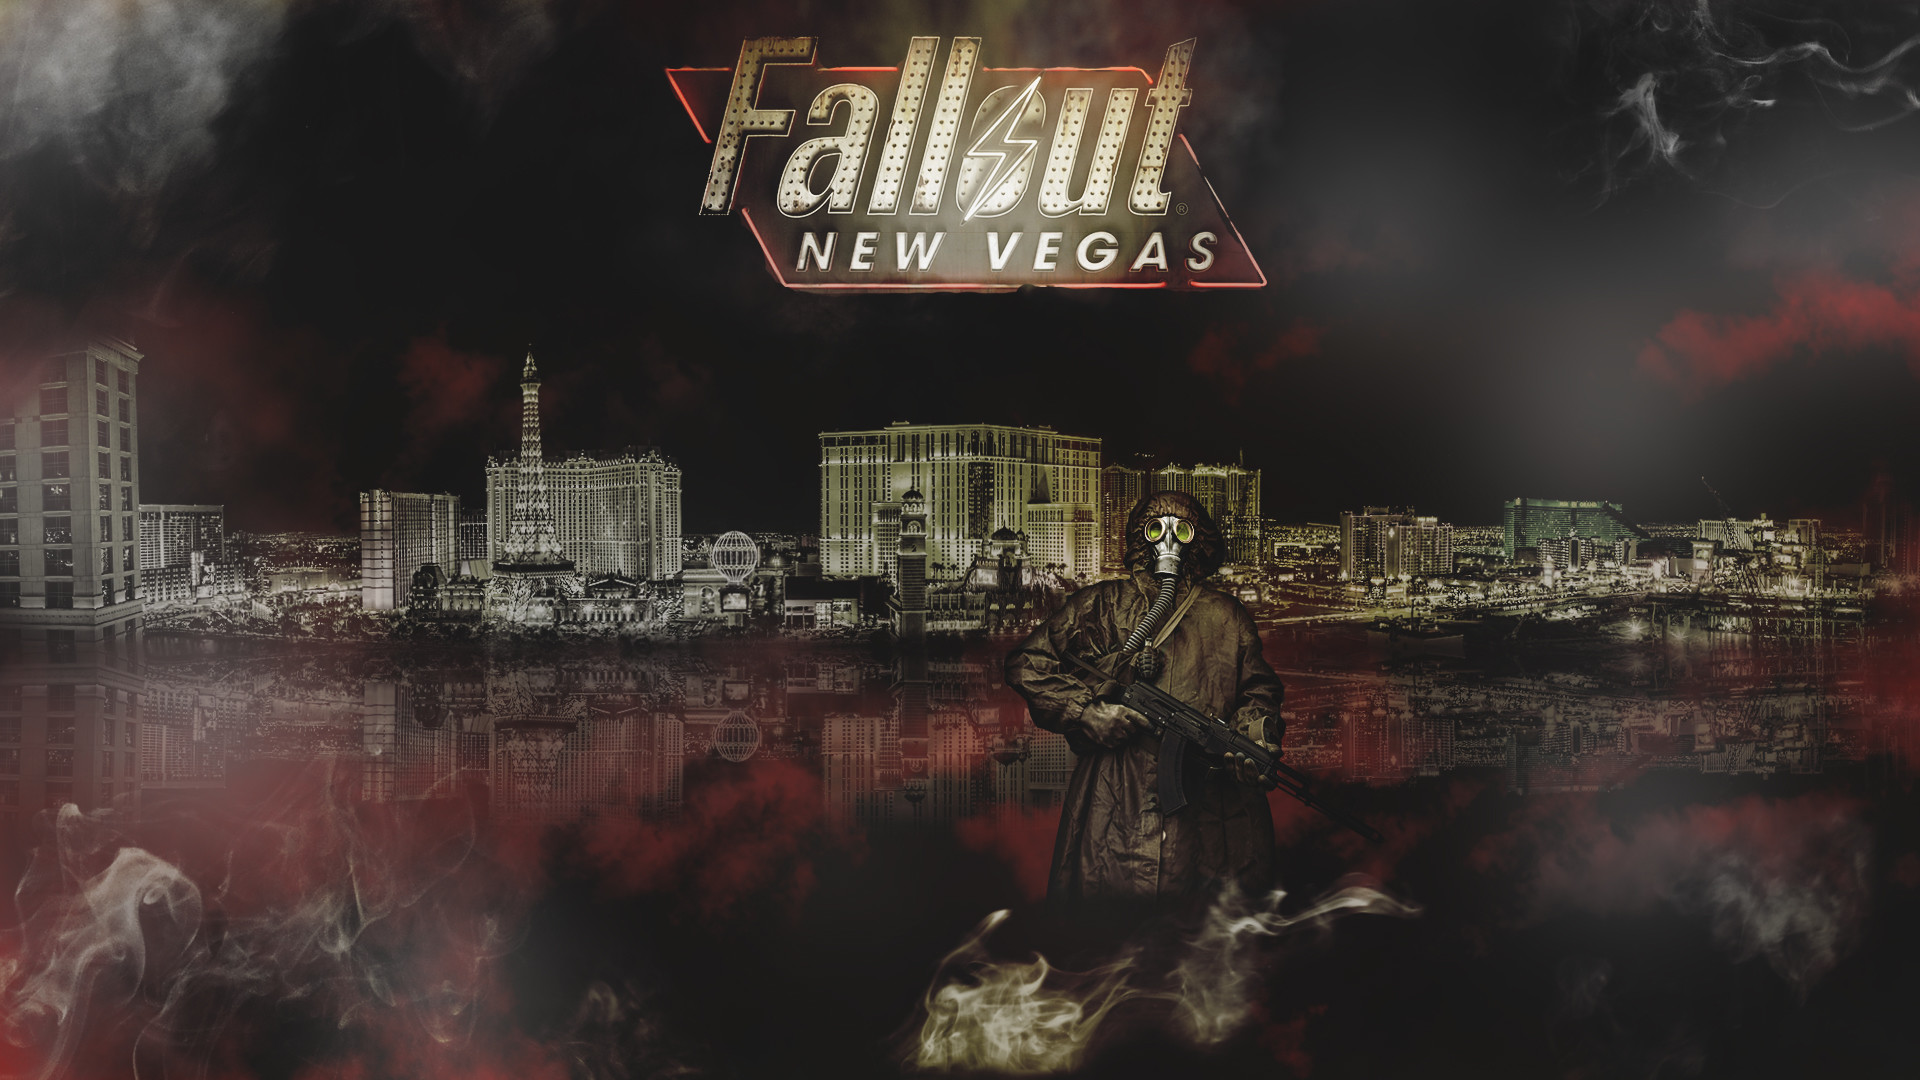 Fallout New Vegas Wallpaper 1080p